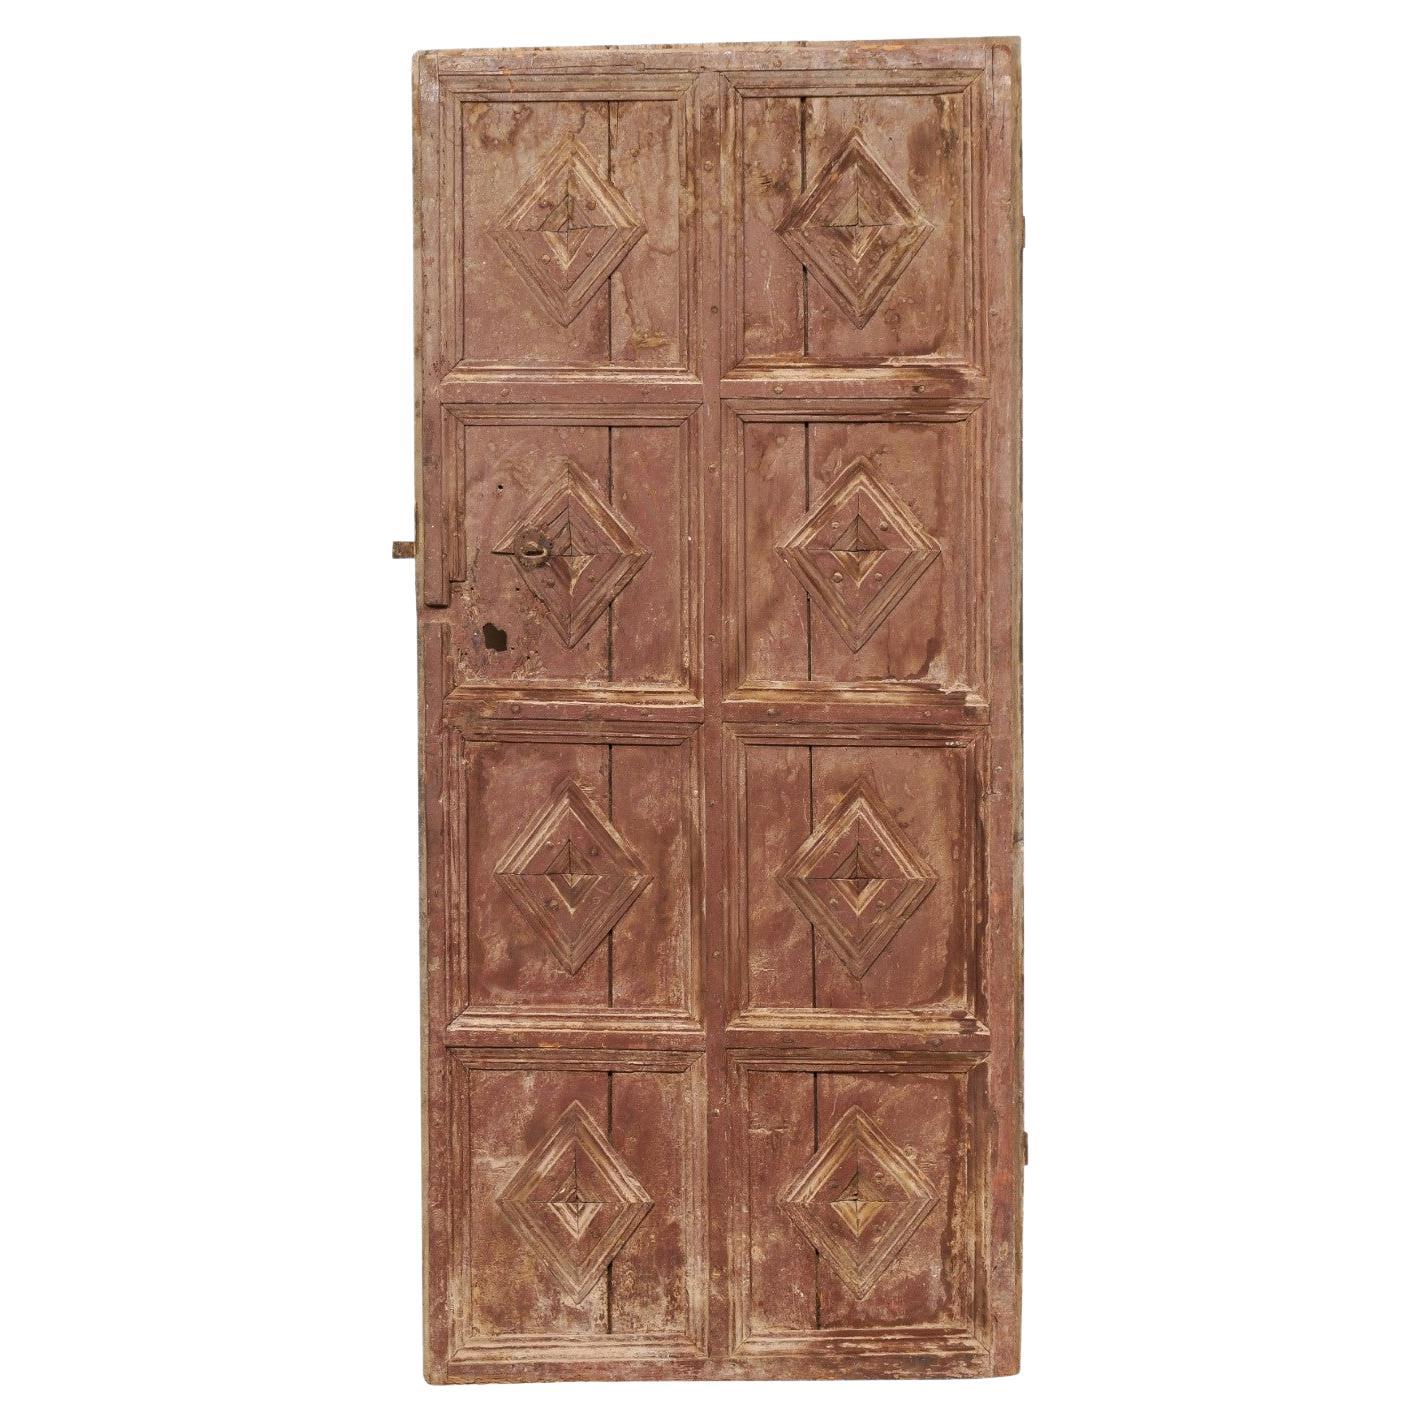 Spanische achtteilige Holztür aus dem 19. Jahrhundert mit Diamantmotiv und Originalfarbe